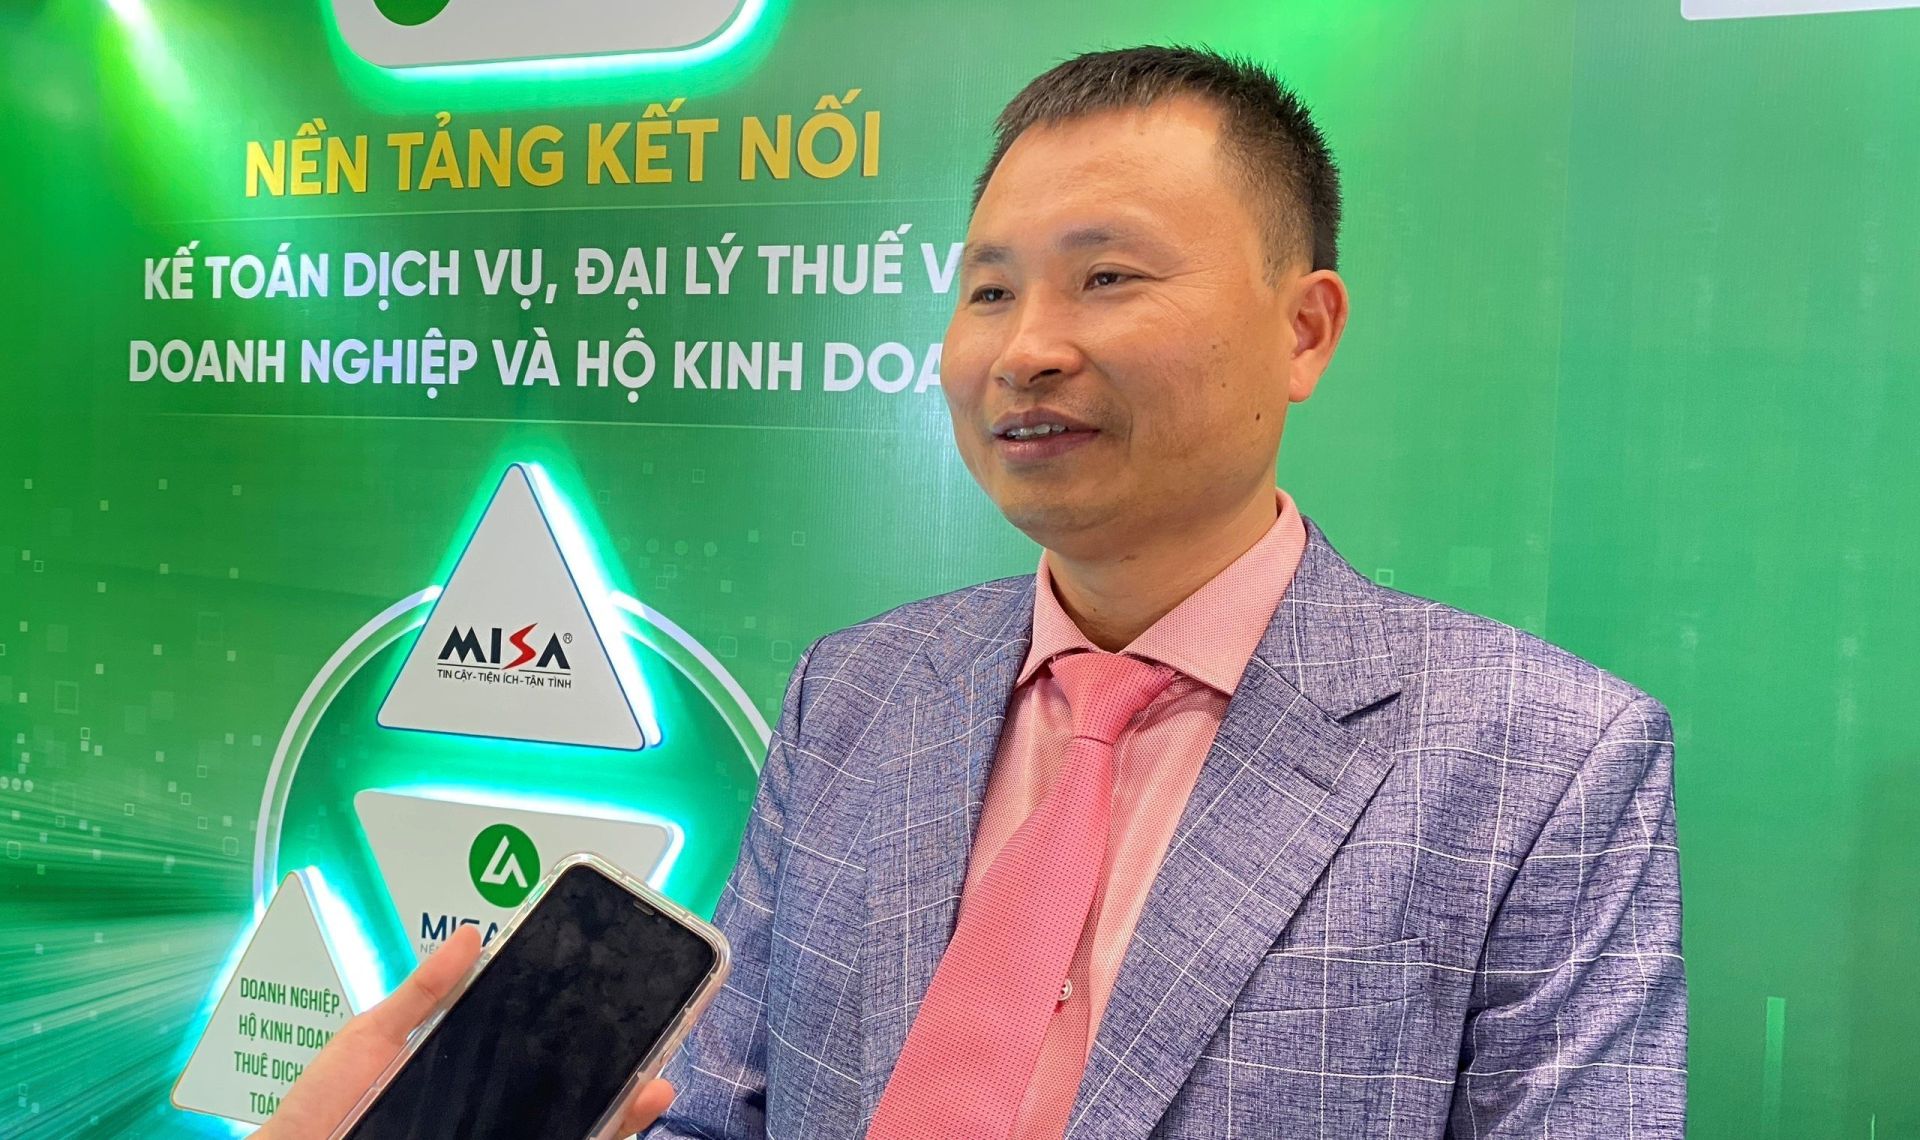 Ông Nguyễn Văn Thức - Chuyên gia cấp cao về Thuế và Kế toán, Cố vấn cấp cao Tổng Giám đốc Công ty Cổ phần Tập đoàn Kế toán Hà Nội